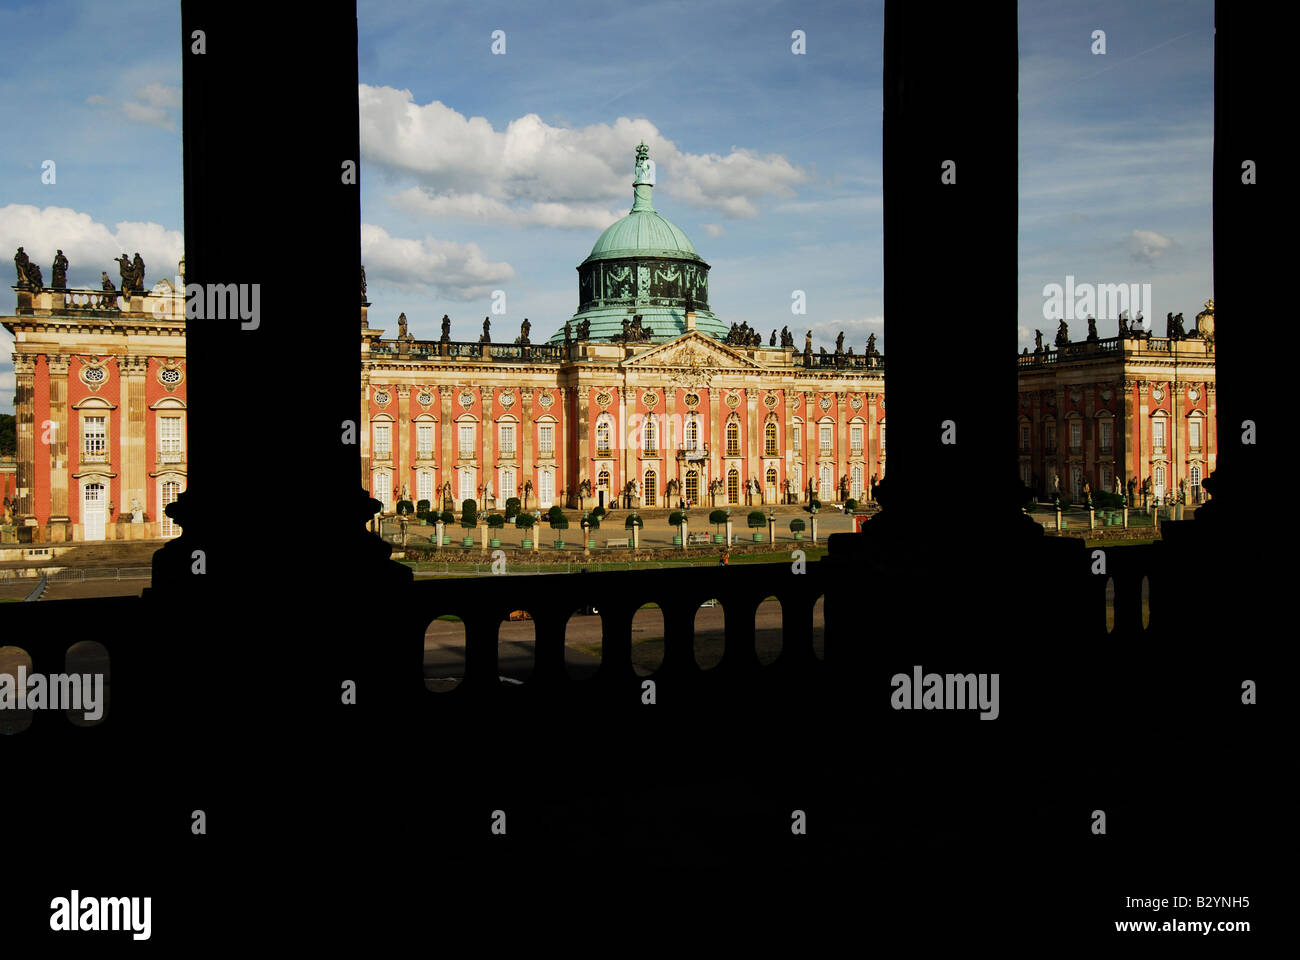 Palazzo nuovo (1763-1769)Parco Schloss, Castello di Sanssouci, potsdam, brandeburgo, Patrimonio dell'Umanità dell'unesco, germania, europa, Photo Kazimierz Jurewicz Foto Stock